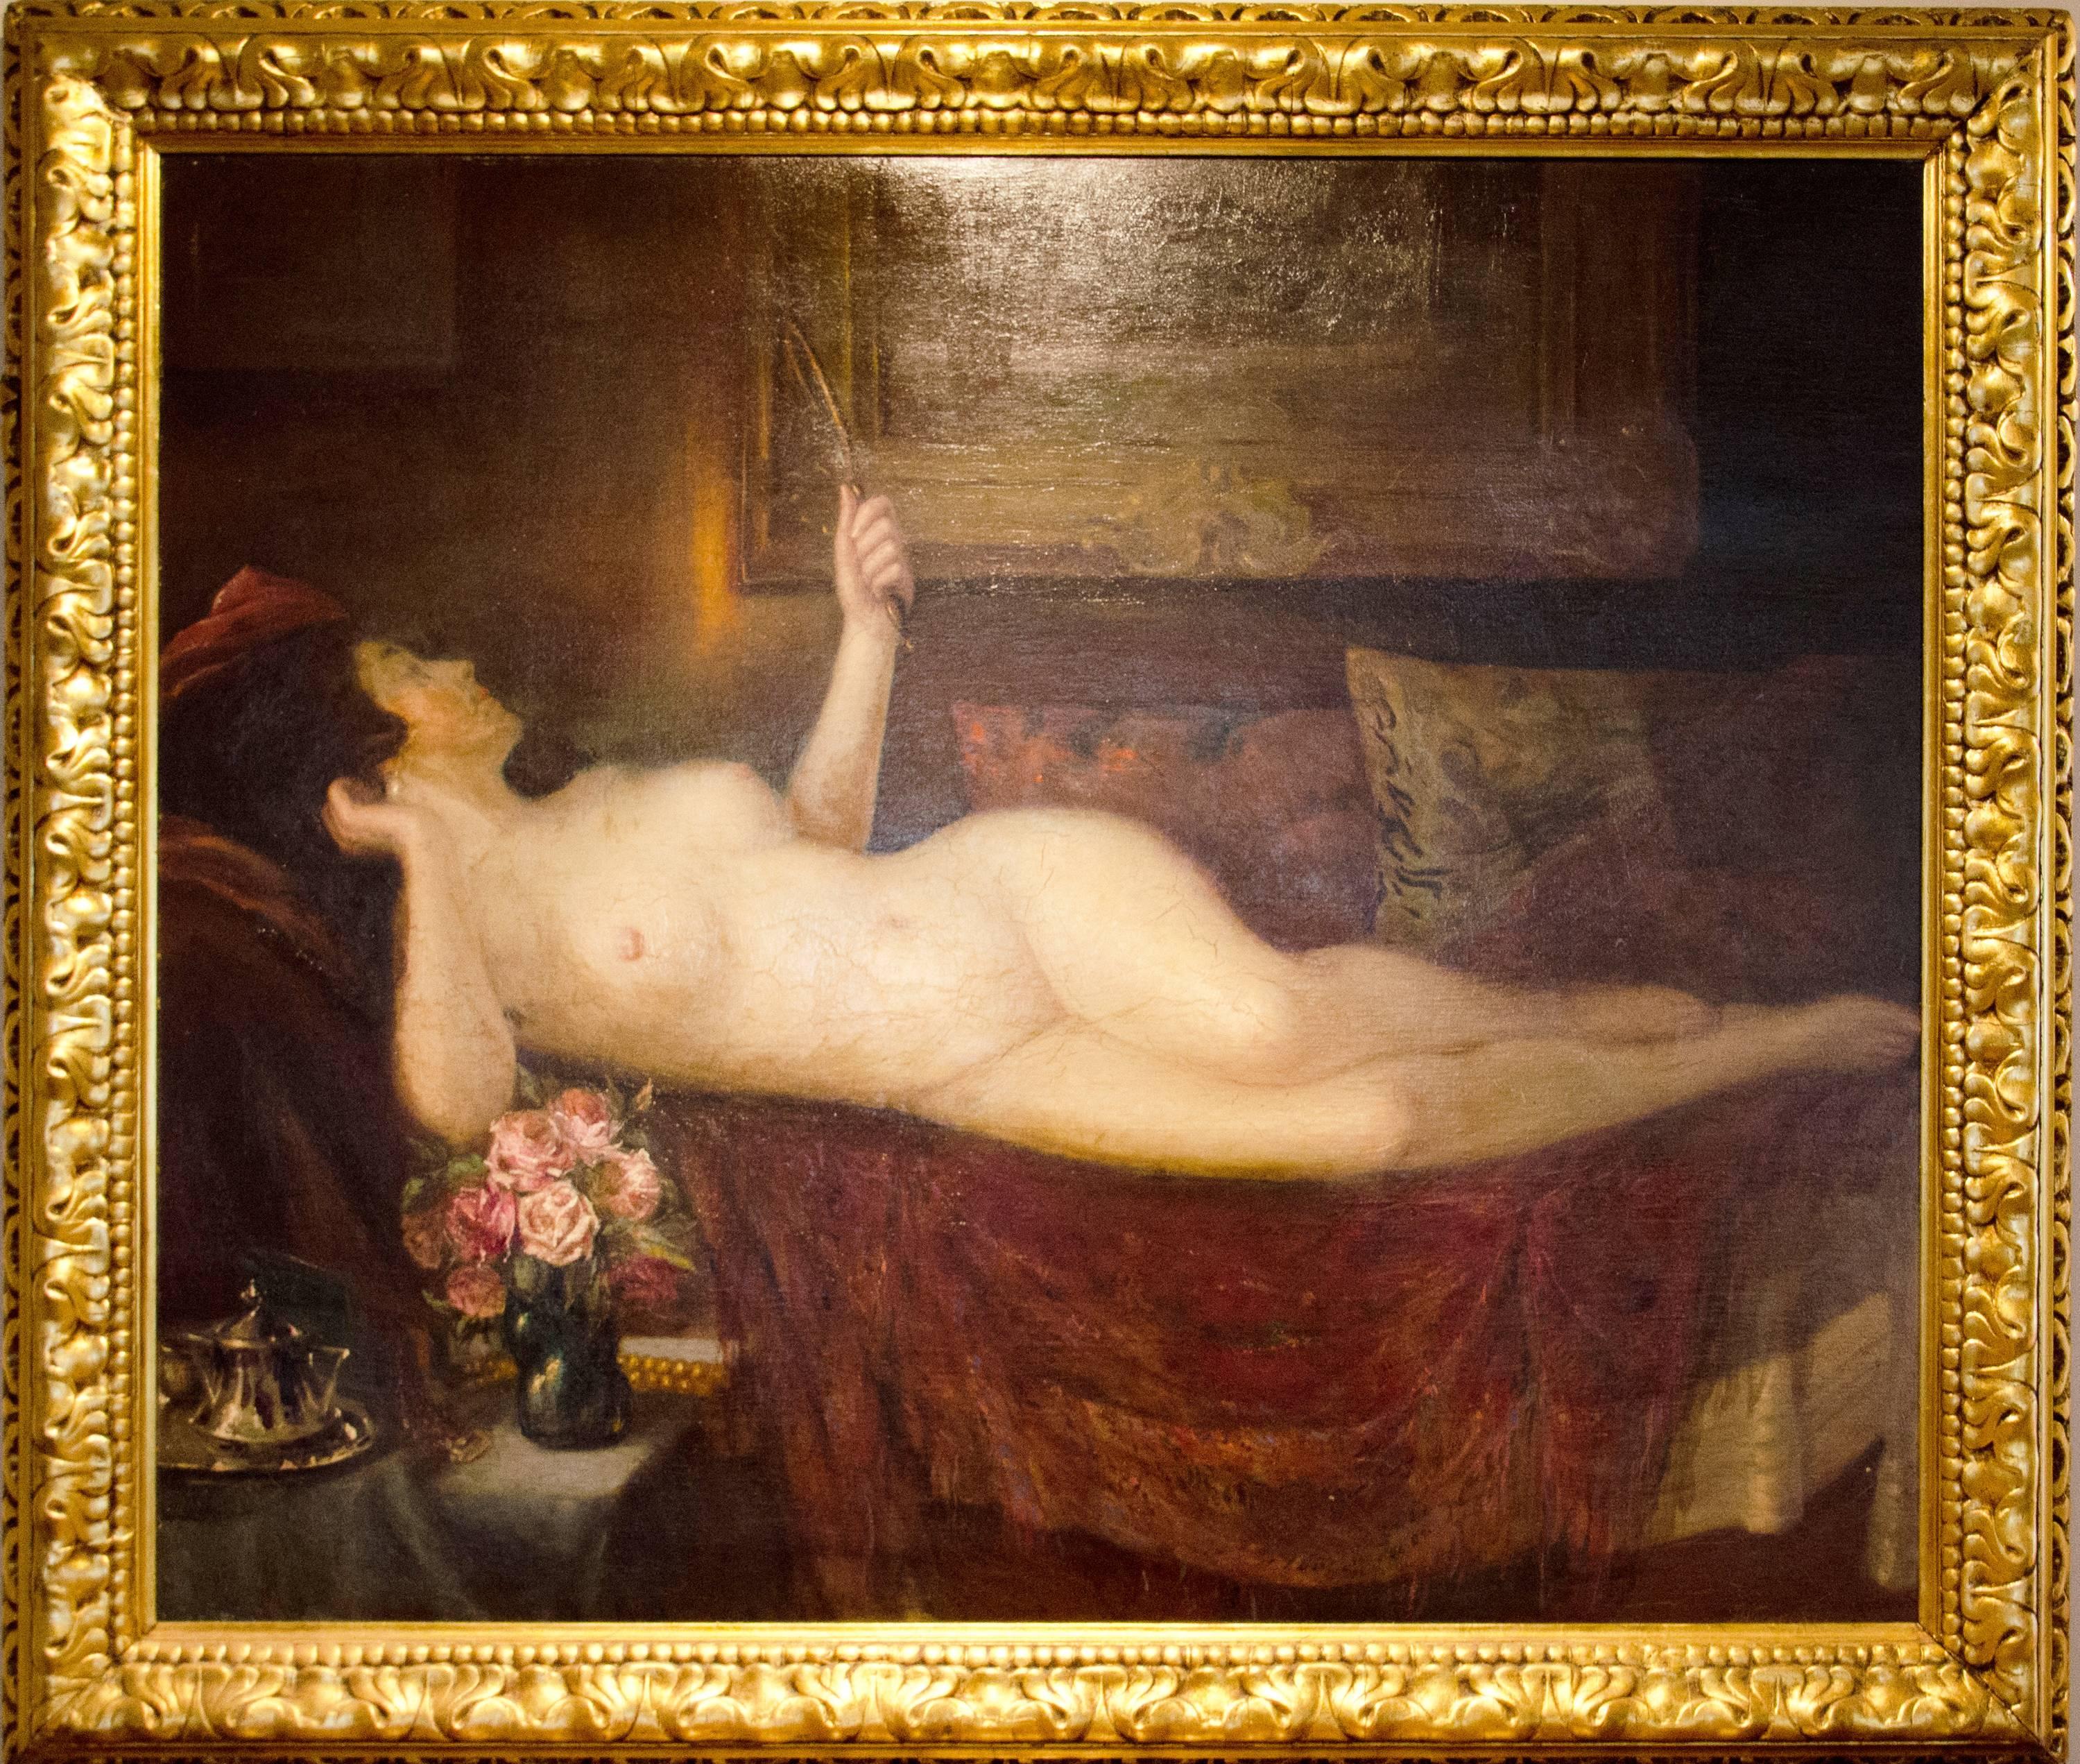 Femme nue couchée avec miroir et roses GRANDE peinture à l'huile 19e siècle ARTISTE POLONAIS - Painting de Jan Wysocki